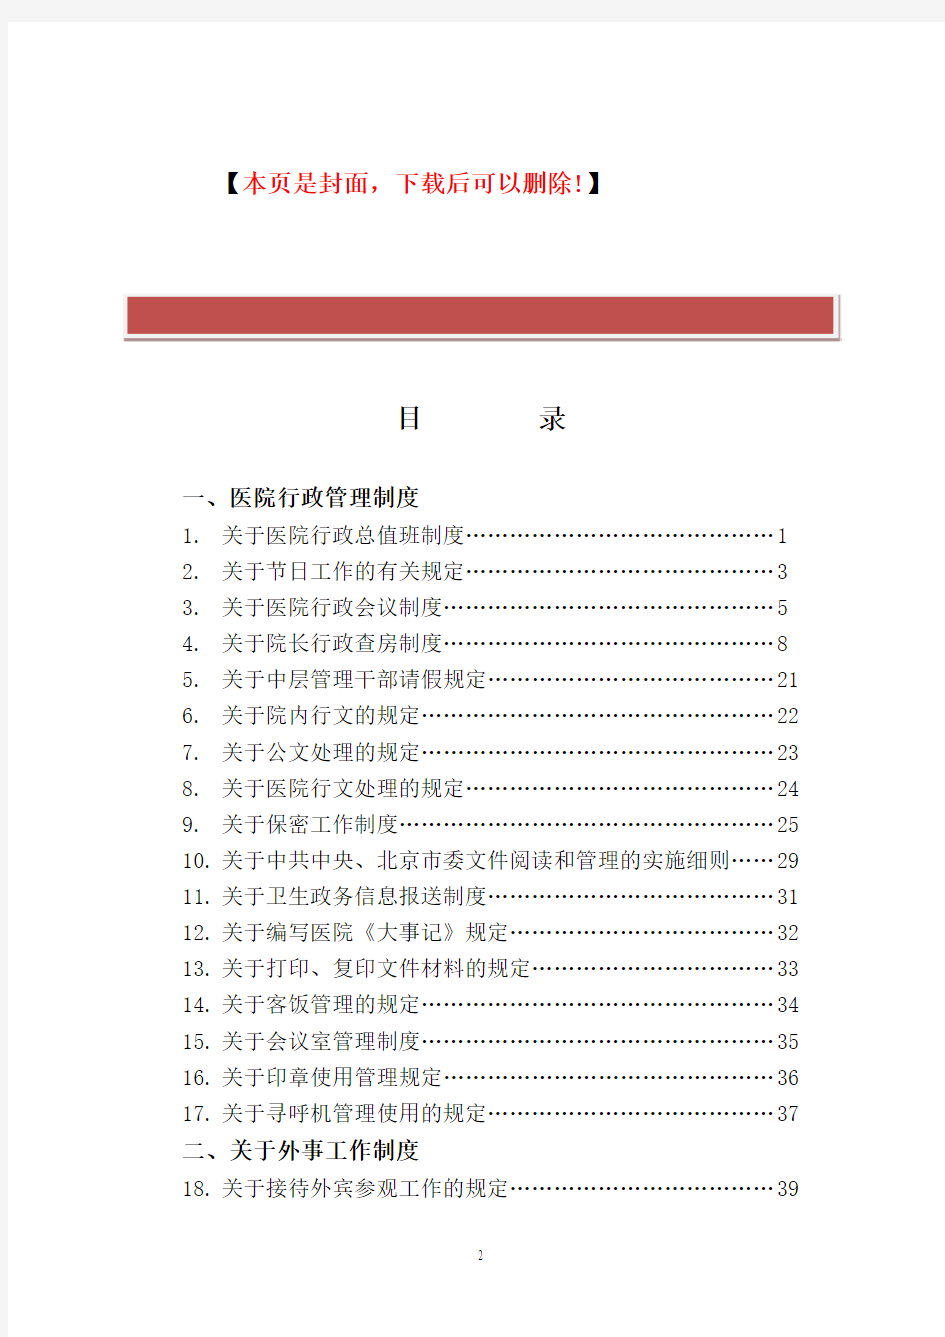 北京友谊医院规章制度(行政部分)